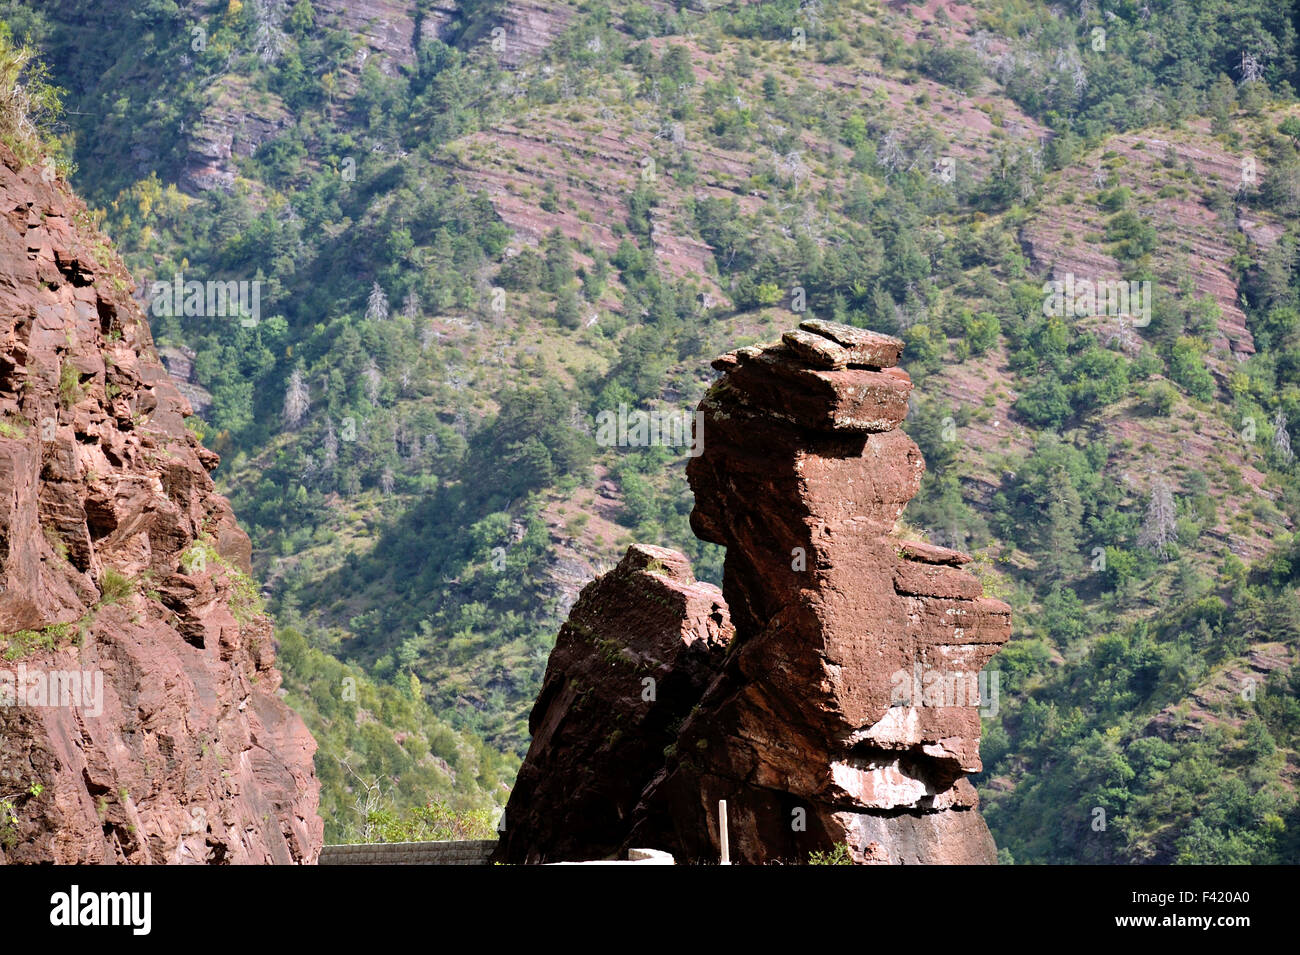 Berühmte Steinskulptur in der Daluis Schlucht, Französische Alpen, Frankreich Stockfoto